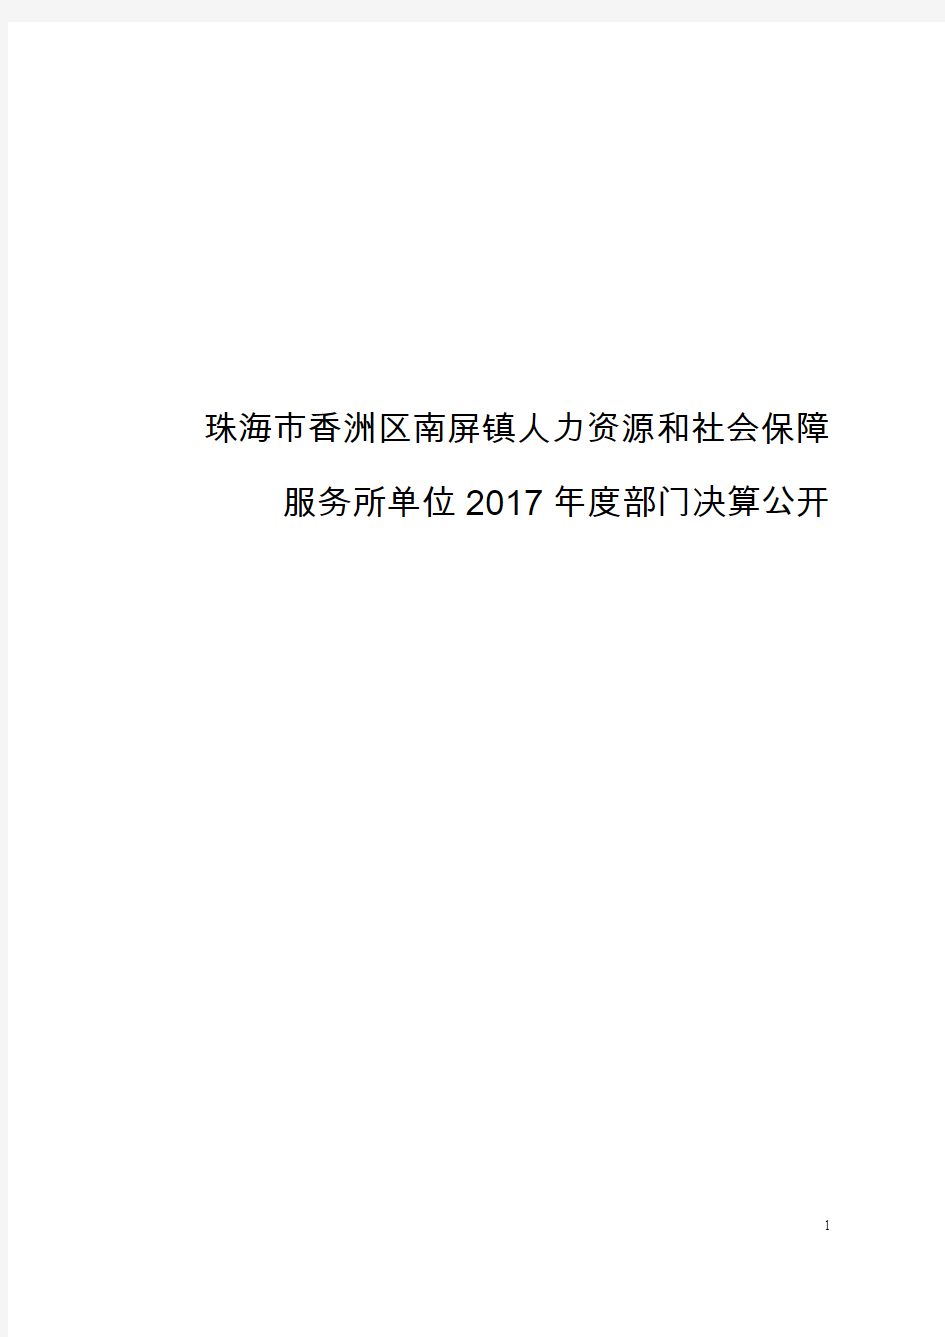 珠海市香洲区南屏镇人力资源和社会保障服务所单位2017年度